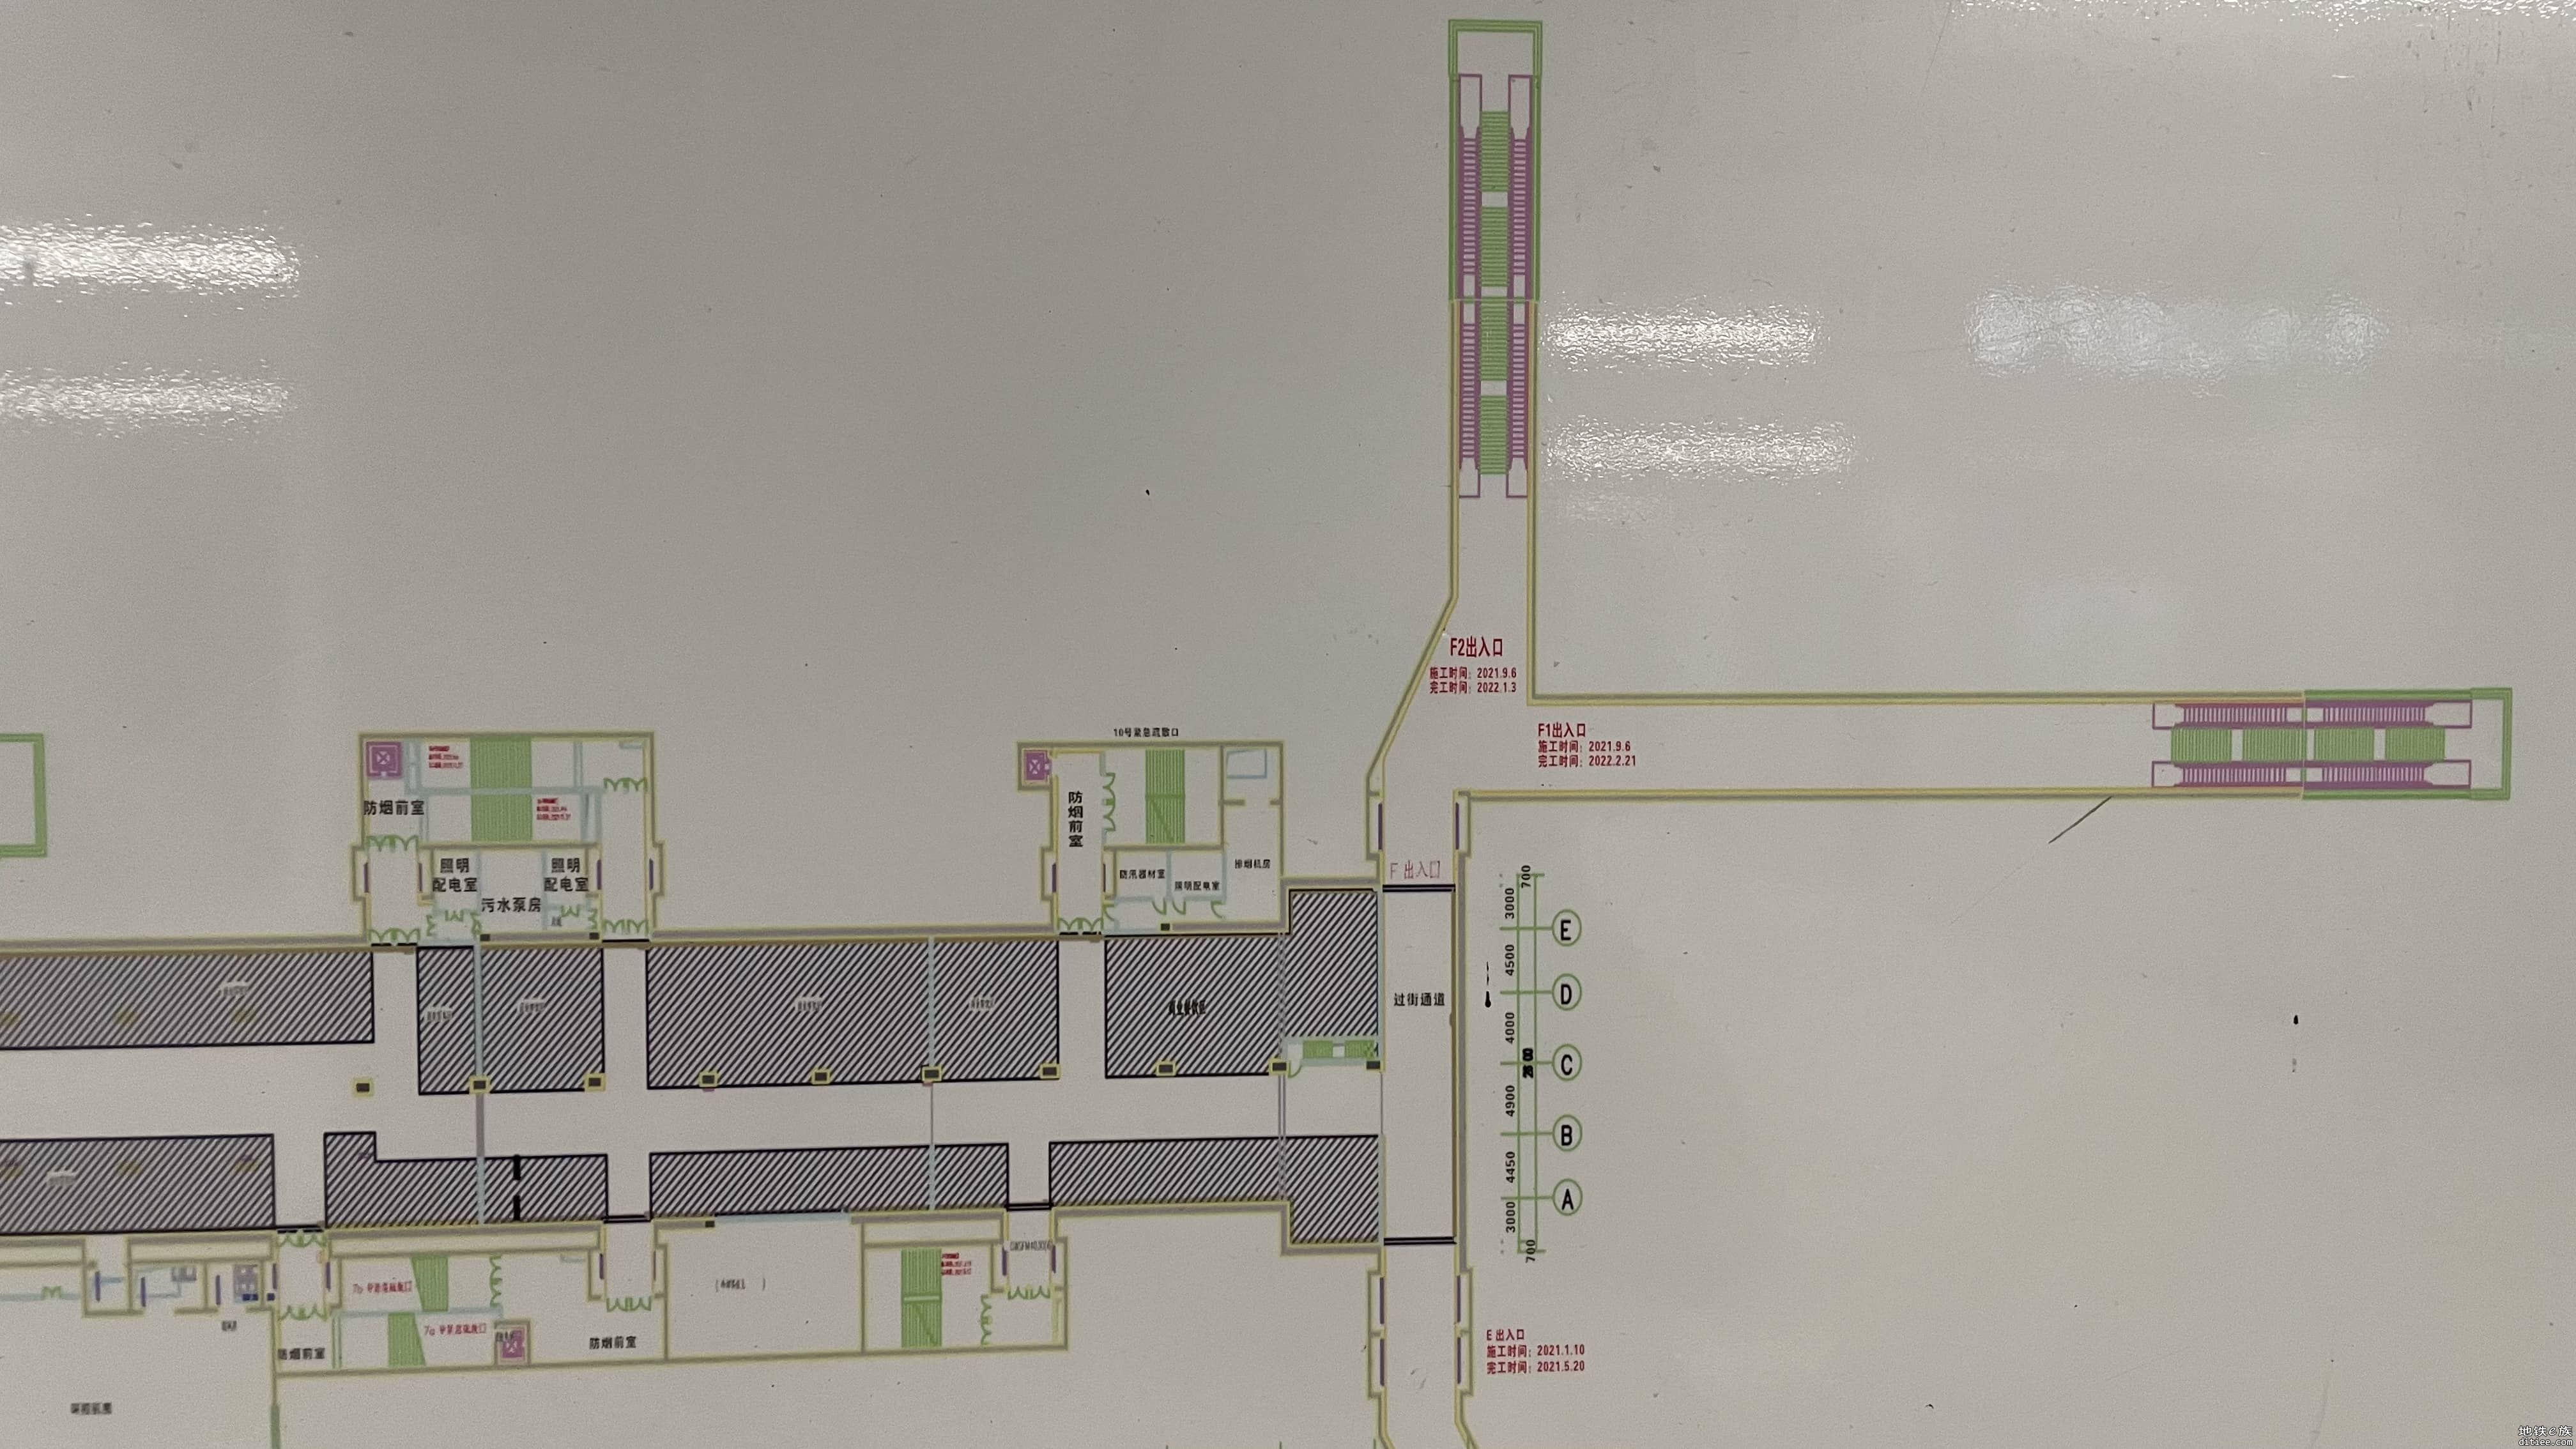 一起看看12号线上川站的出入口数量和商业区布置